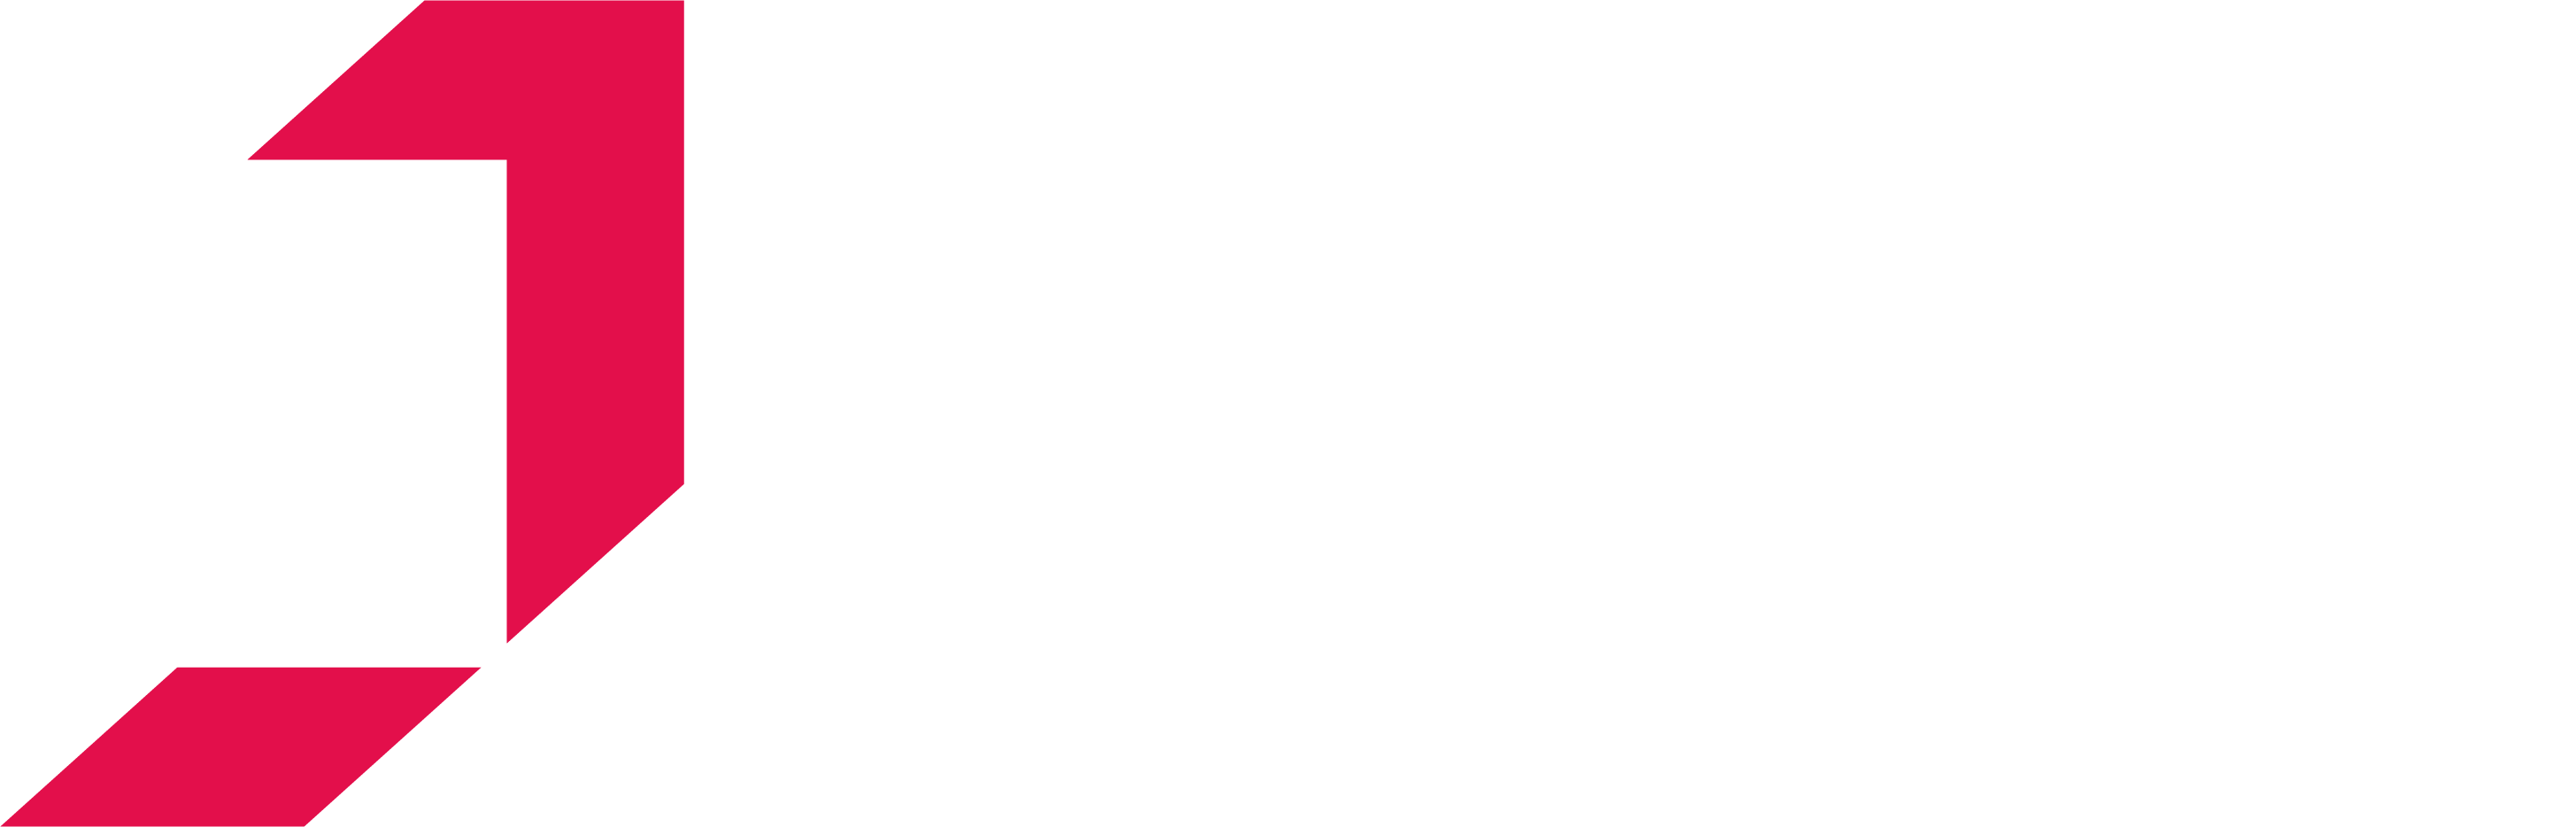 J Tech Suspension Ltd